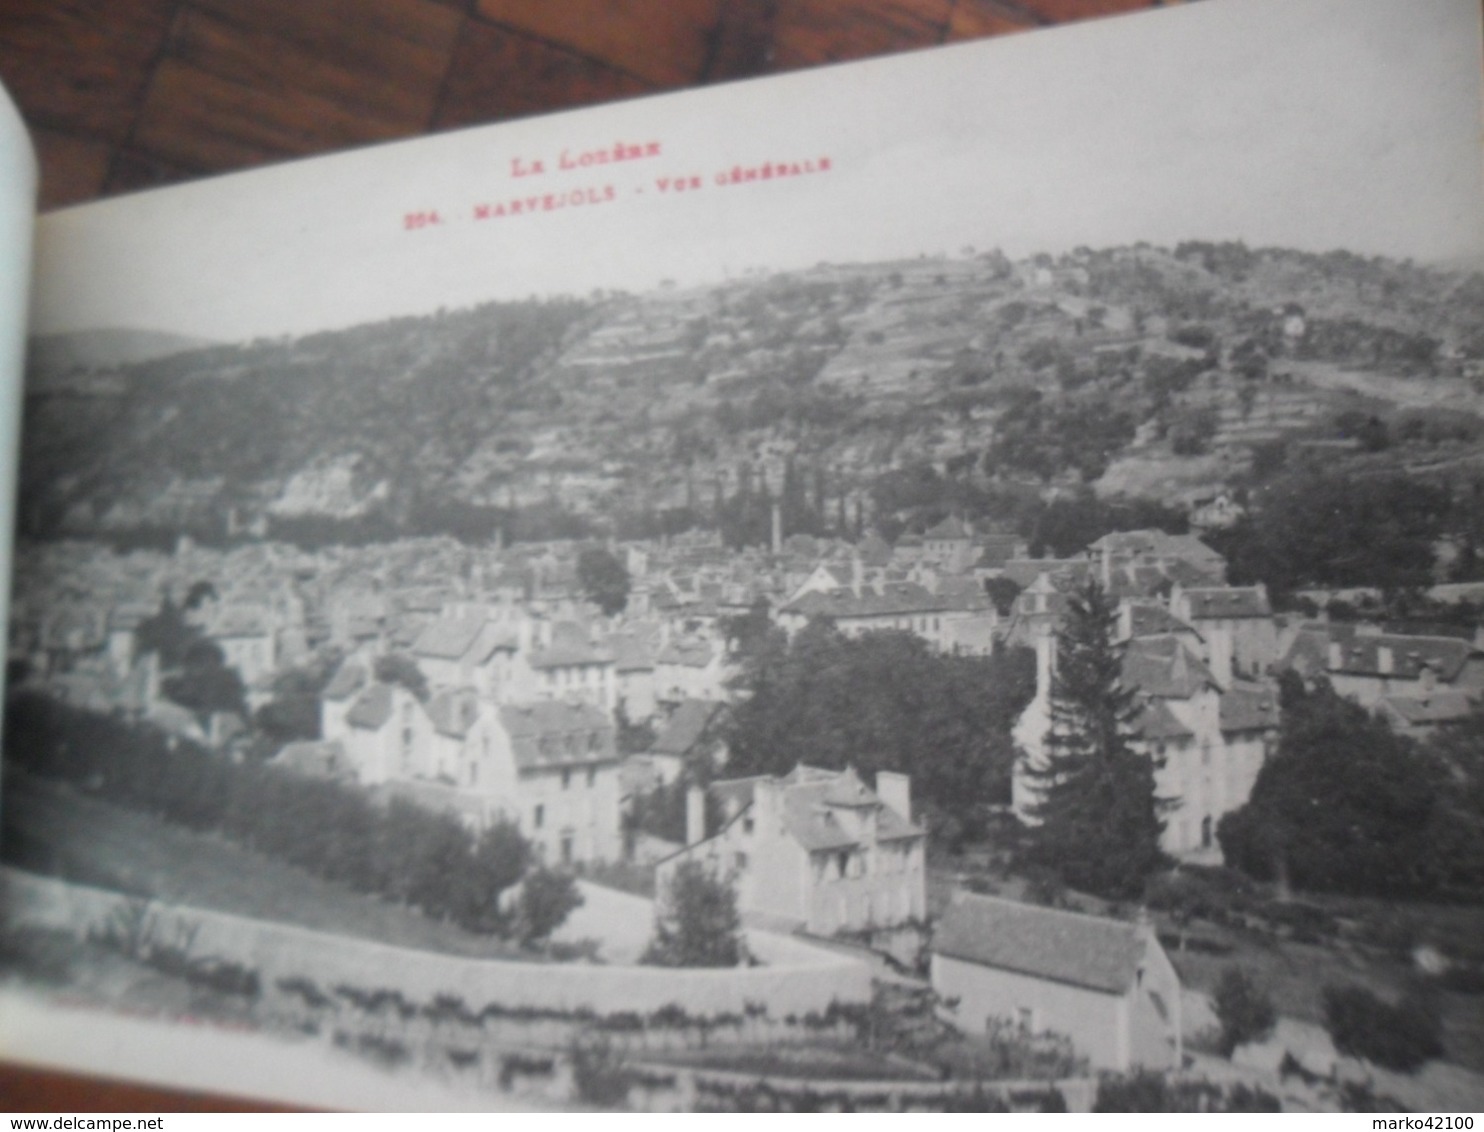 Marvejols (Lozère),carnet 12 cartes postales anciennes détachables.